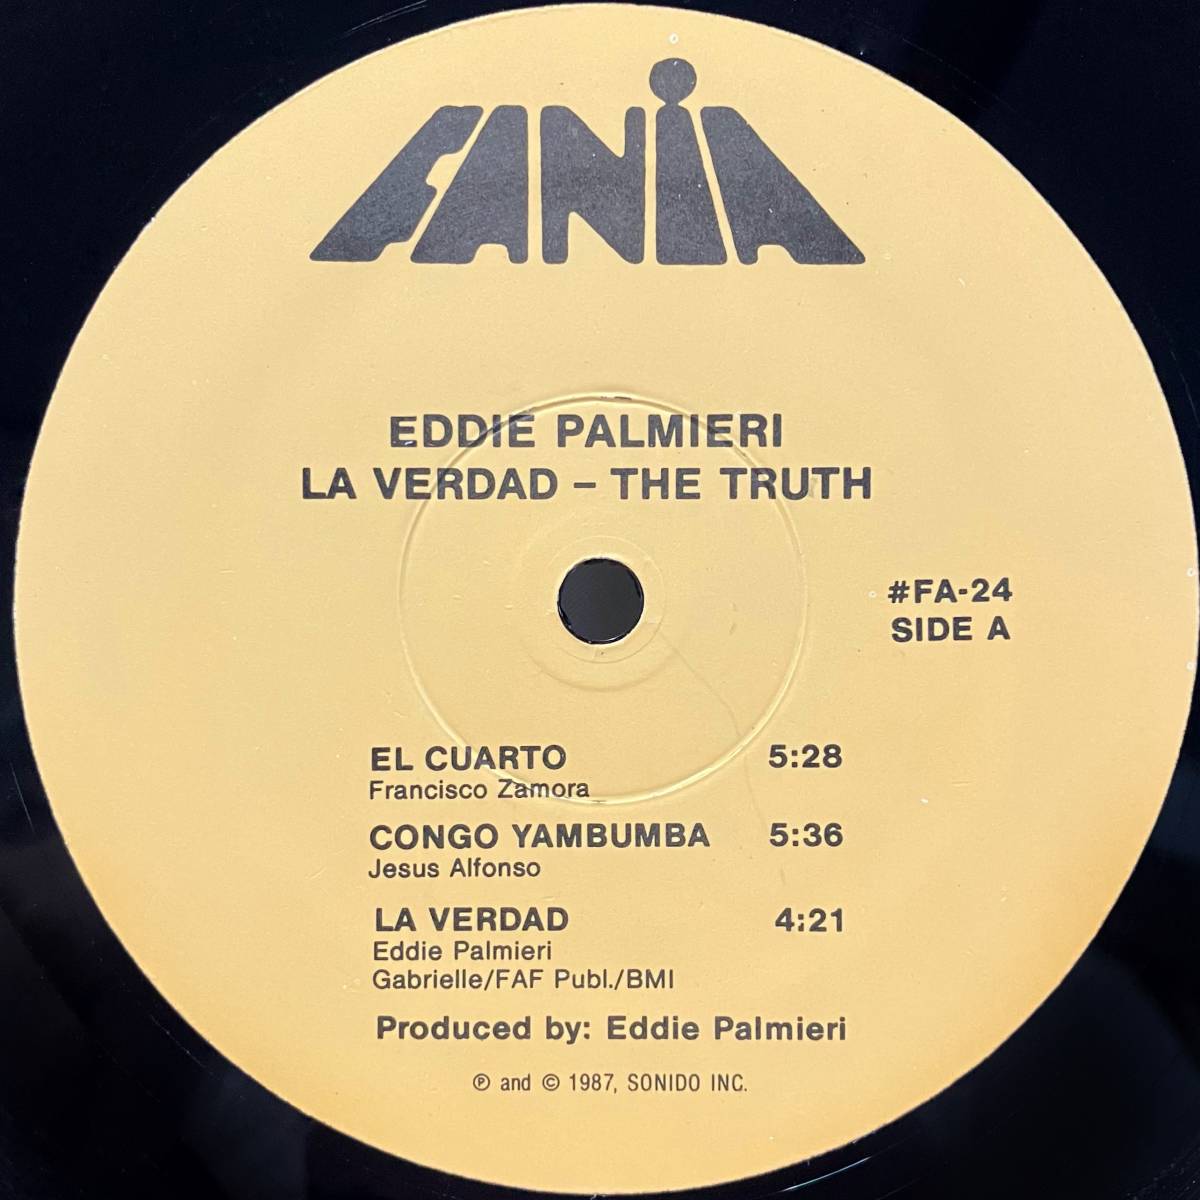  прослушивание! прекрасный товар * killer cальса * латиноамериканский Jazz warutsuEDDIE PALMIERI / LA VERDAD - THE TRUTH (FANIA) latin jazz salsa descarga